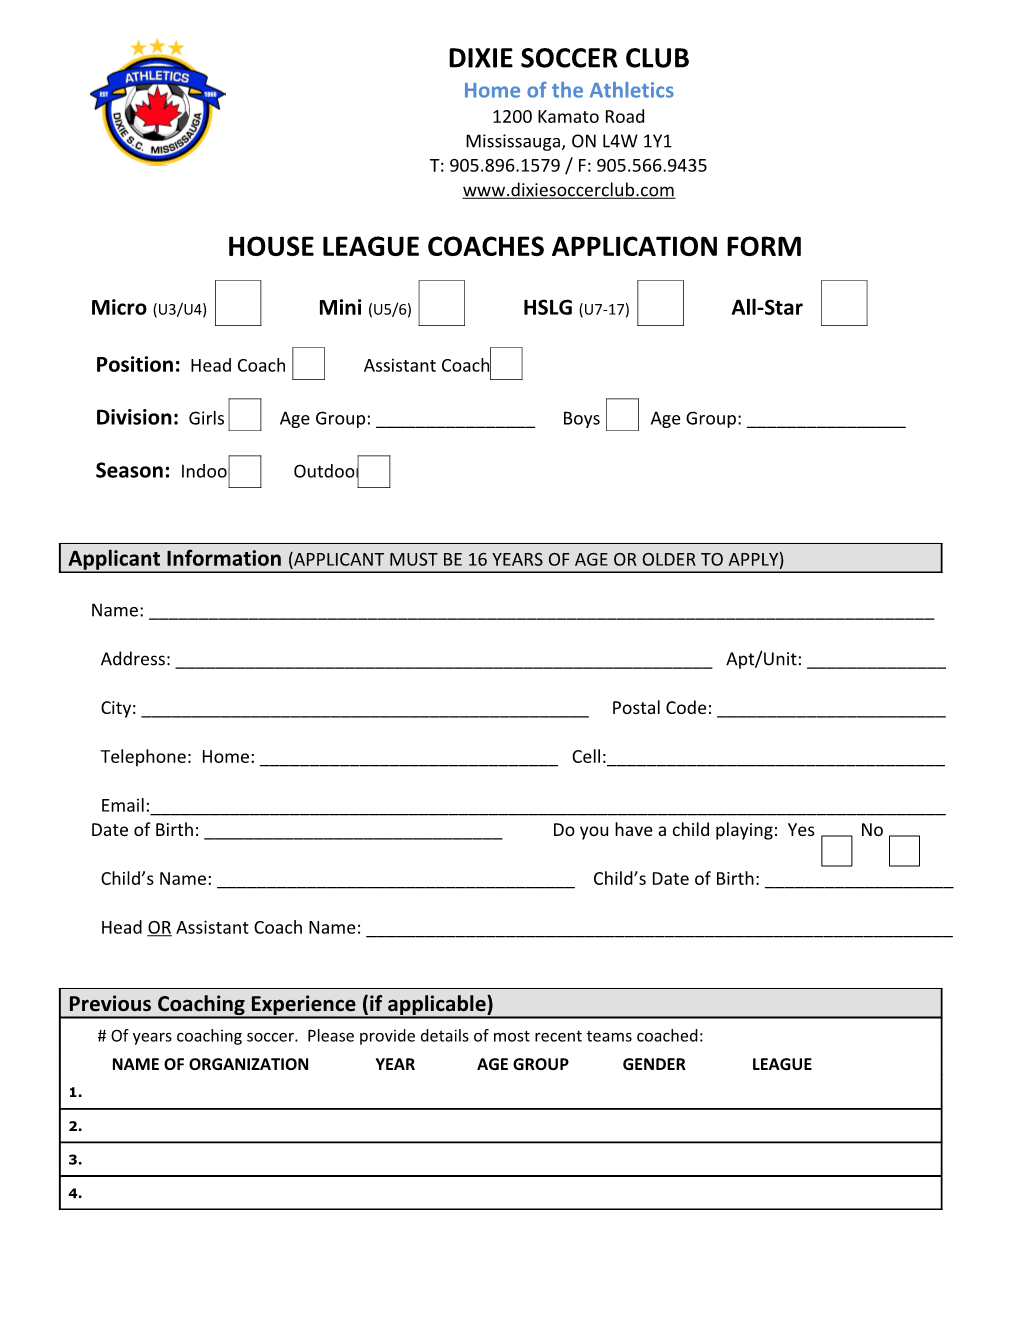 House League Coaches Application Form